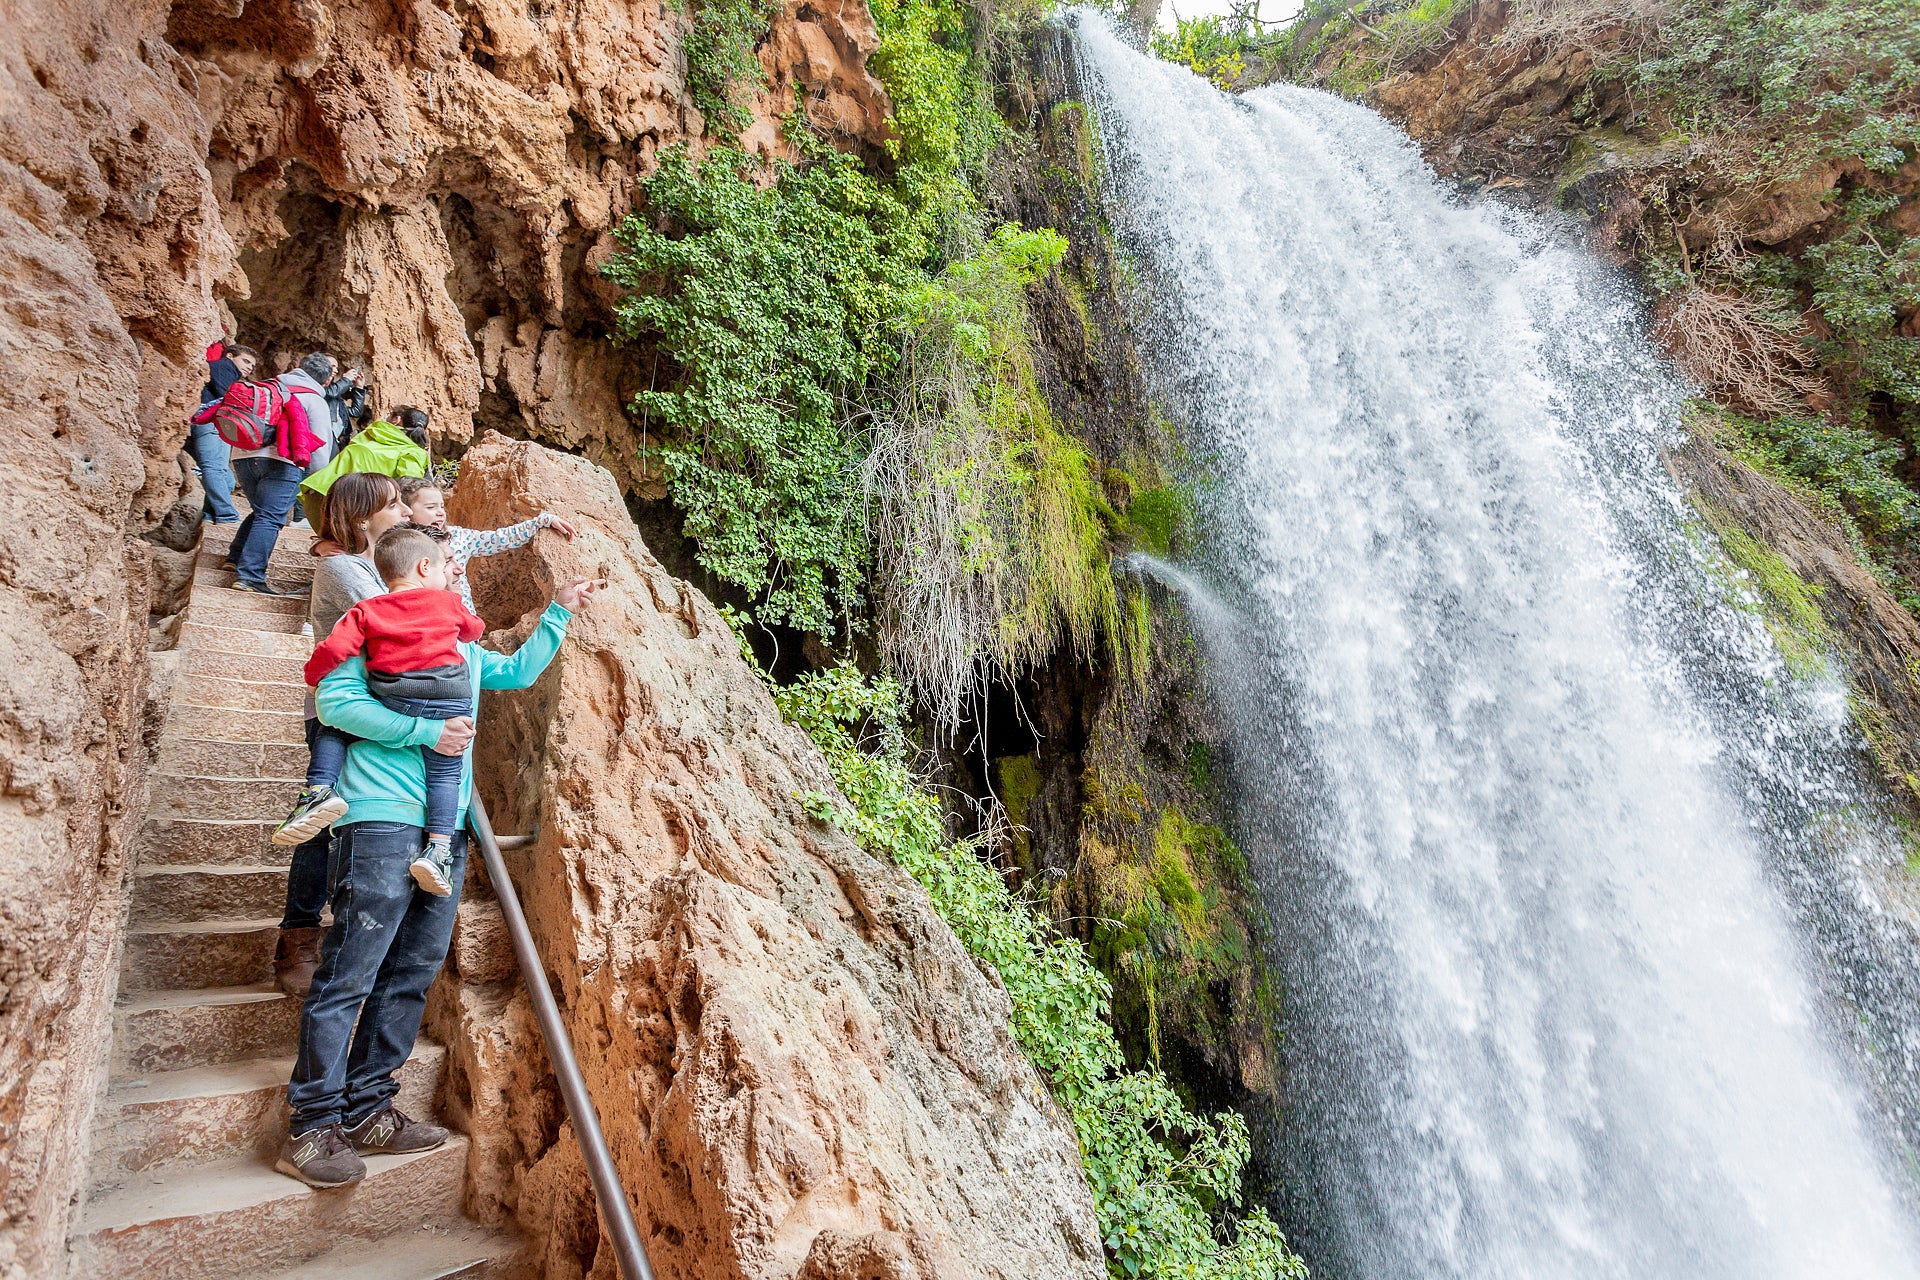 La imponente cascada Cola de Caballo, la más alta de todo el parque con sus 53 metros de caída.